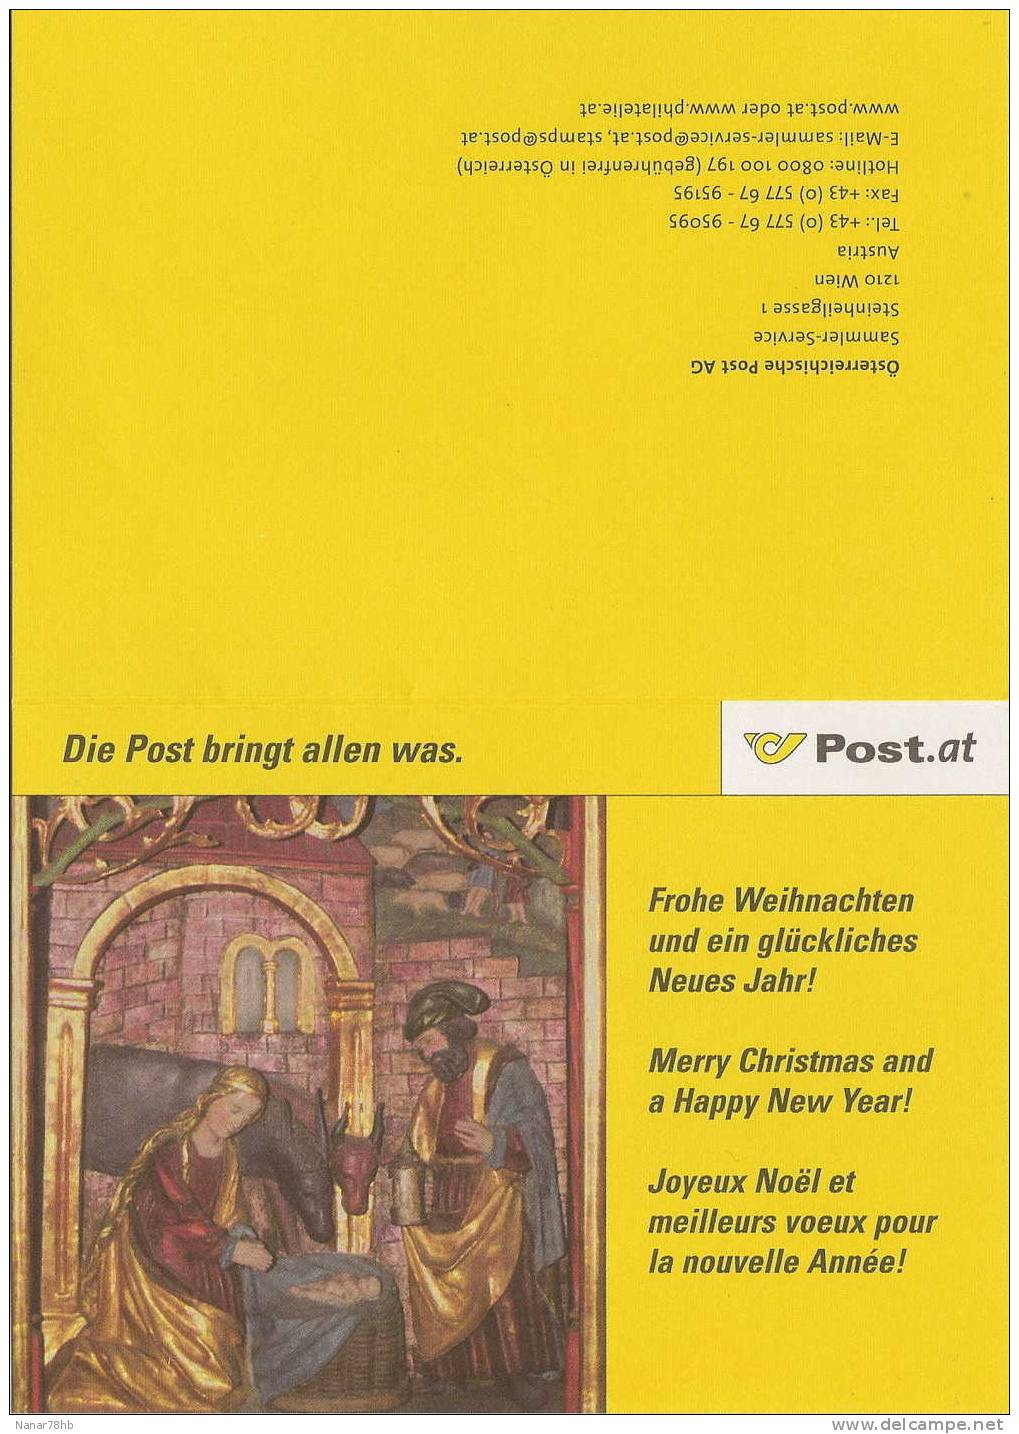 Carte Du Service De La Poste Autrichienne Pour Les Fêtes De Fin D'année (timbre De Noél, Oblitération Chriskindl) - Maschinenstempel (EMA)